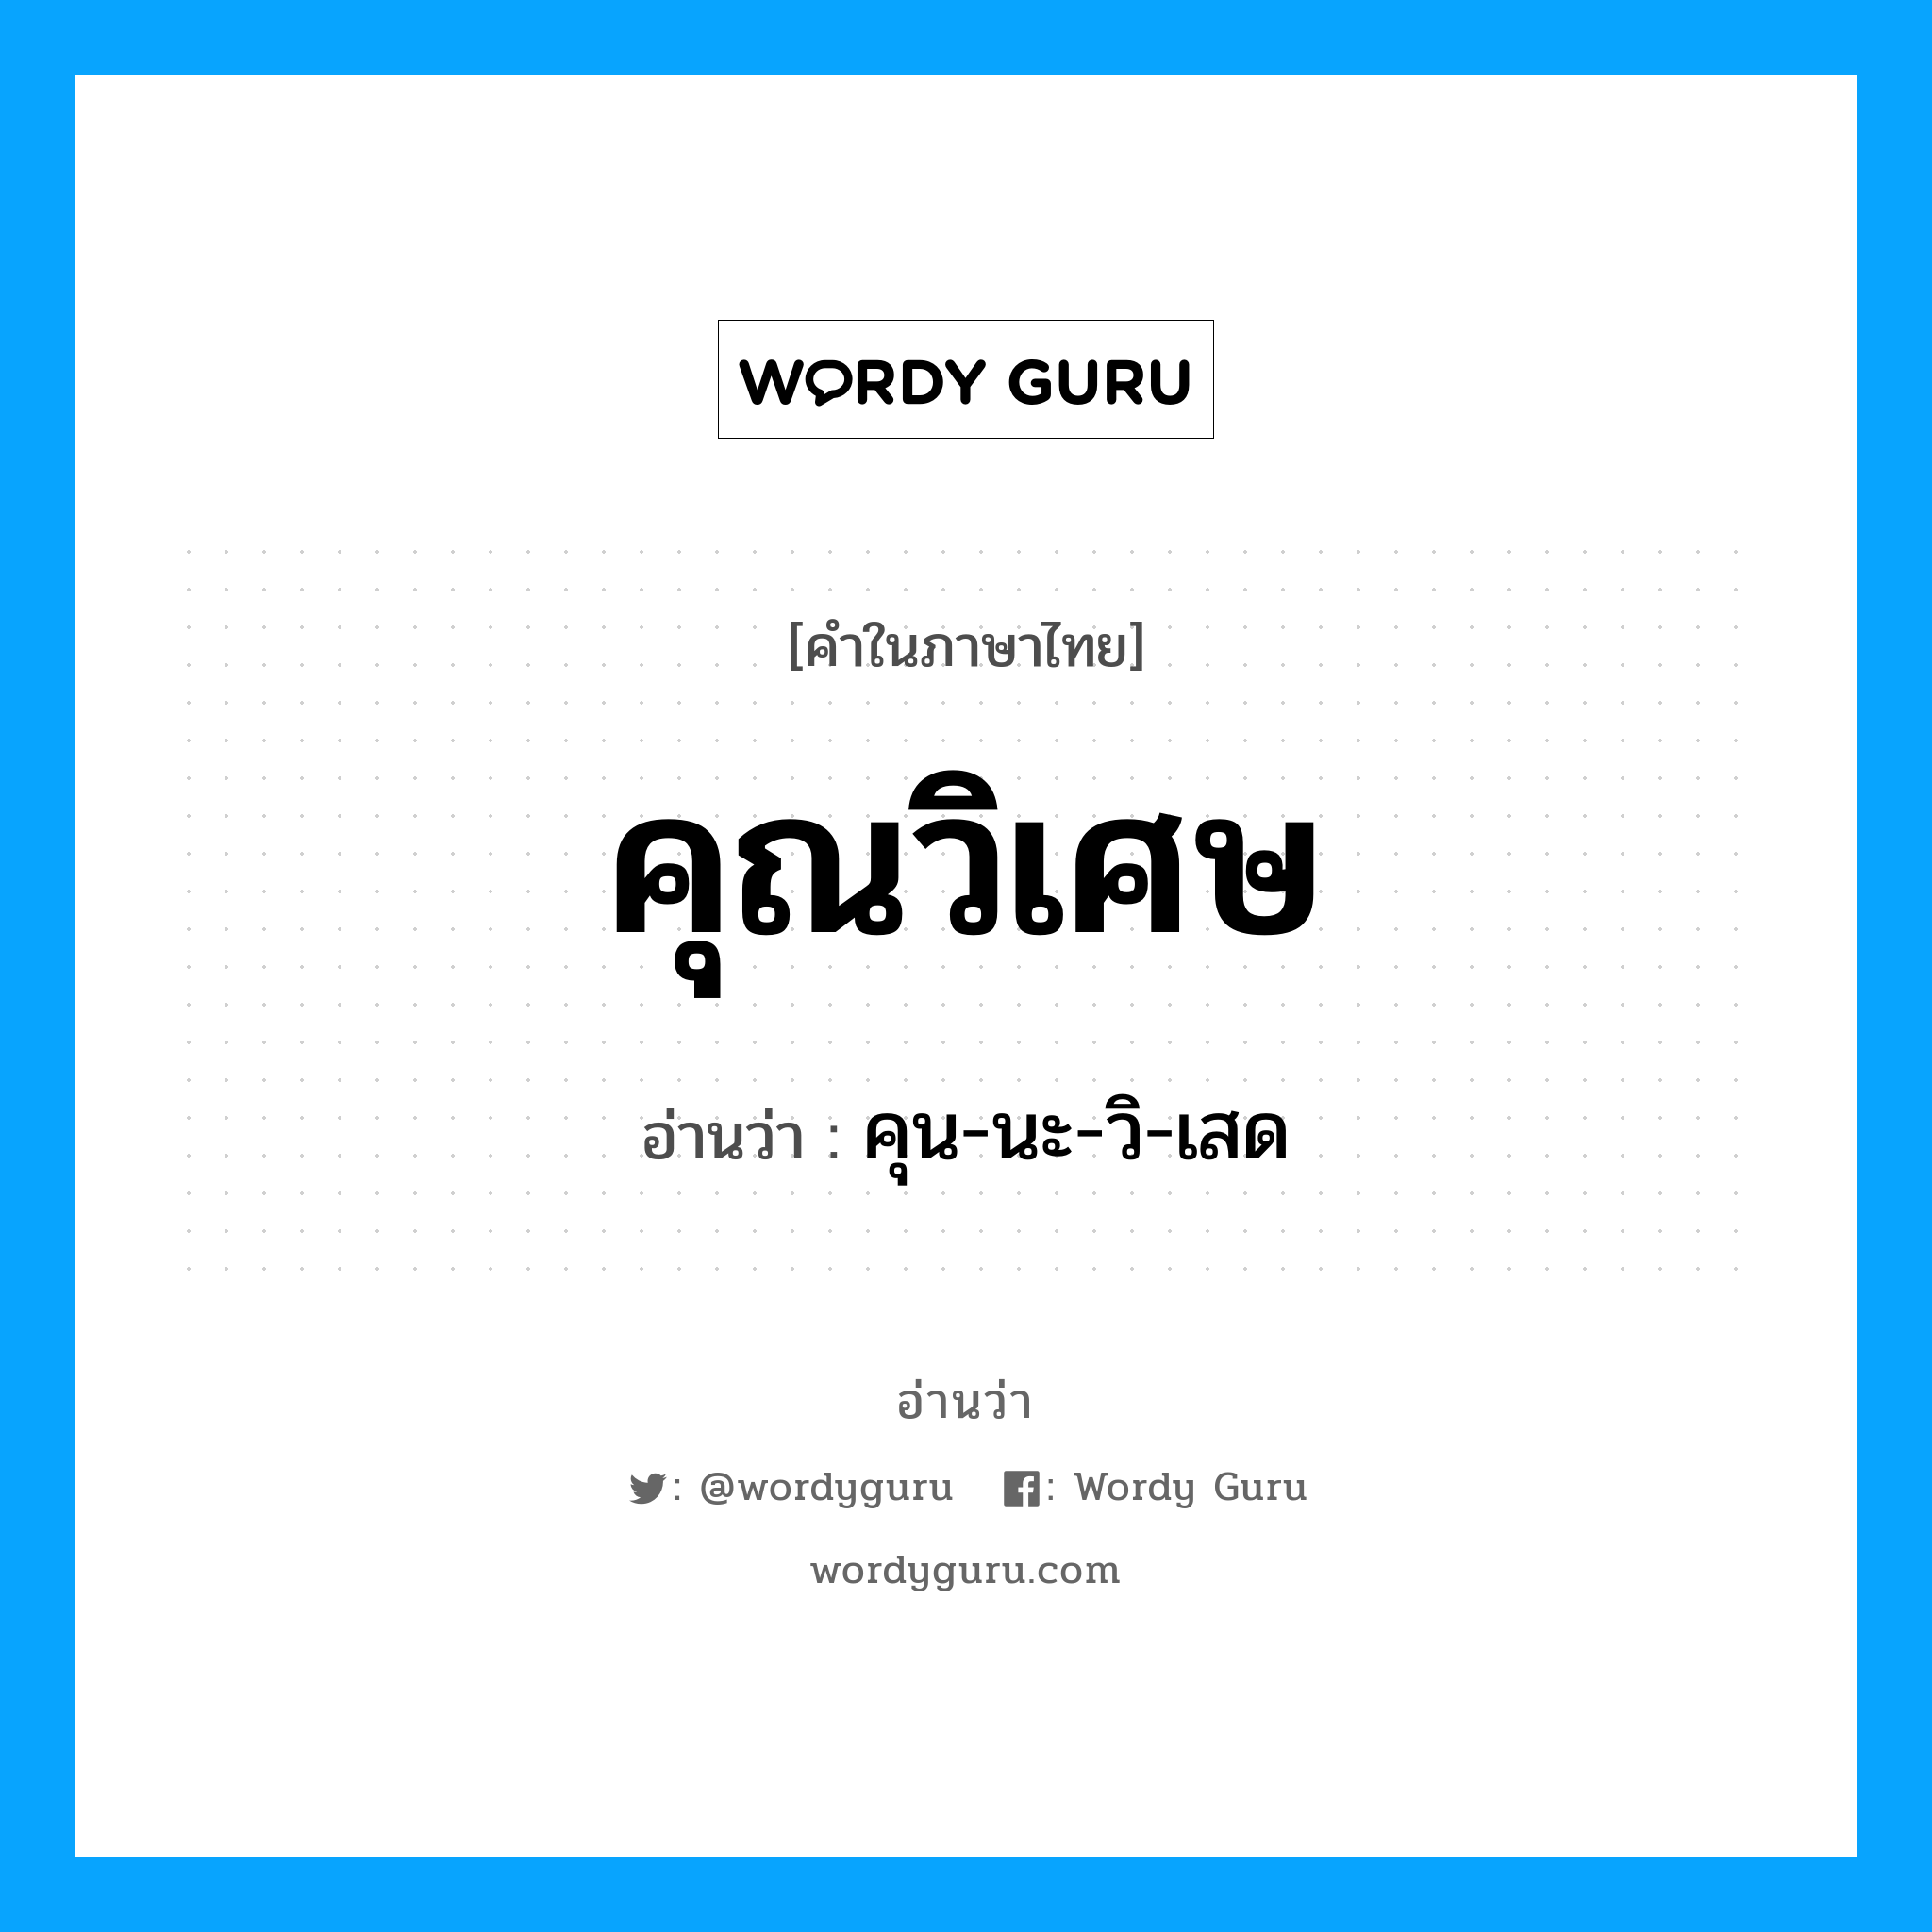 คุน-นะ-วิ-เสด เป็นคำอ่านของคำไหน?, คำในภาษาไทย คุน-นะ-วิ-เสด อ่านว่า คุณวิเศษ